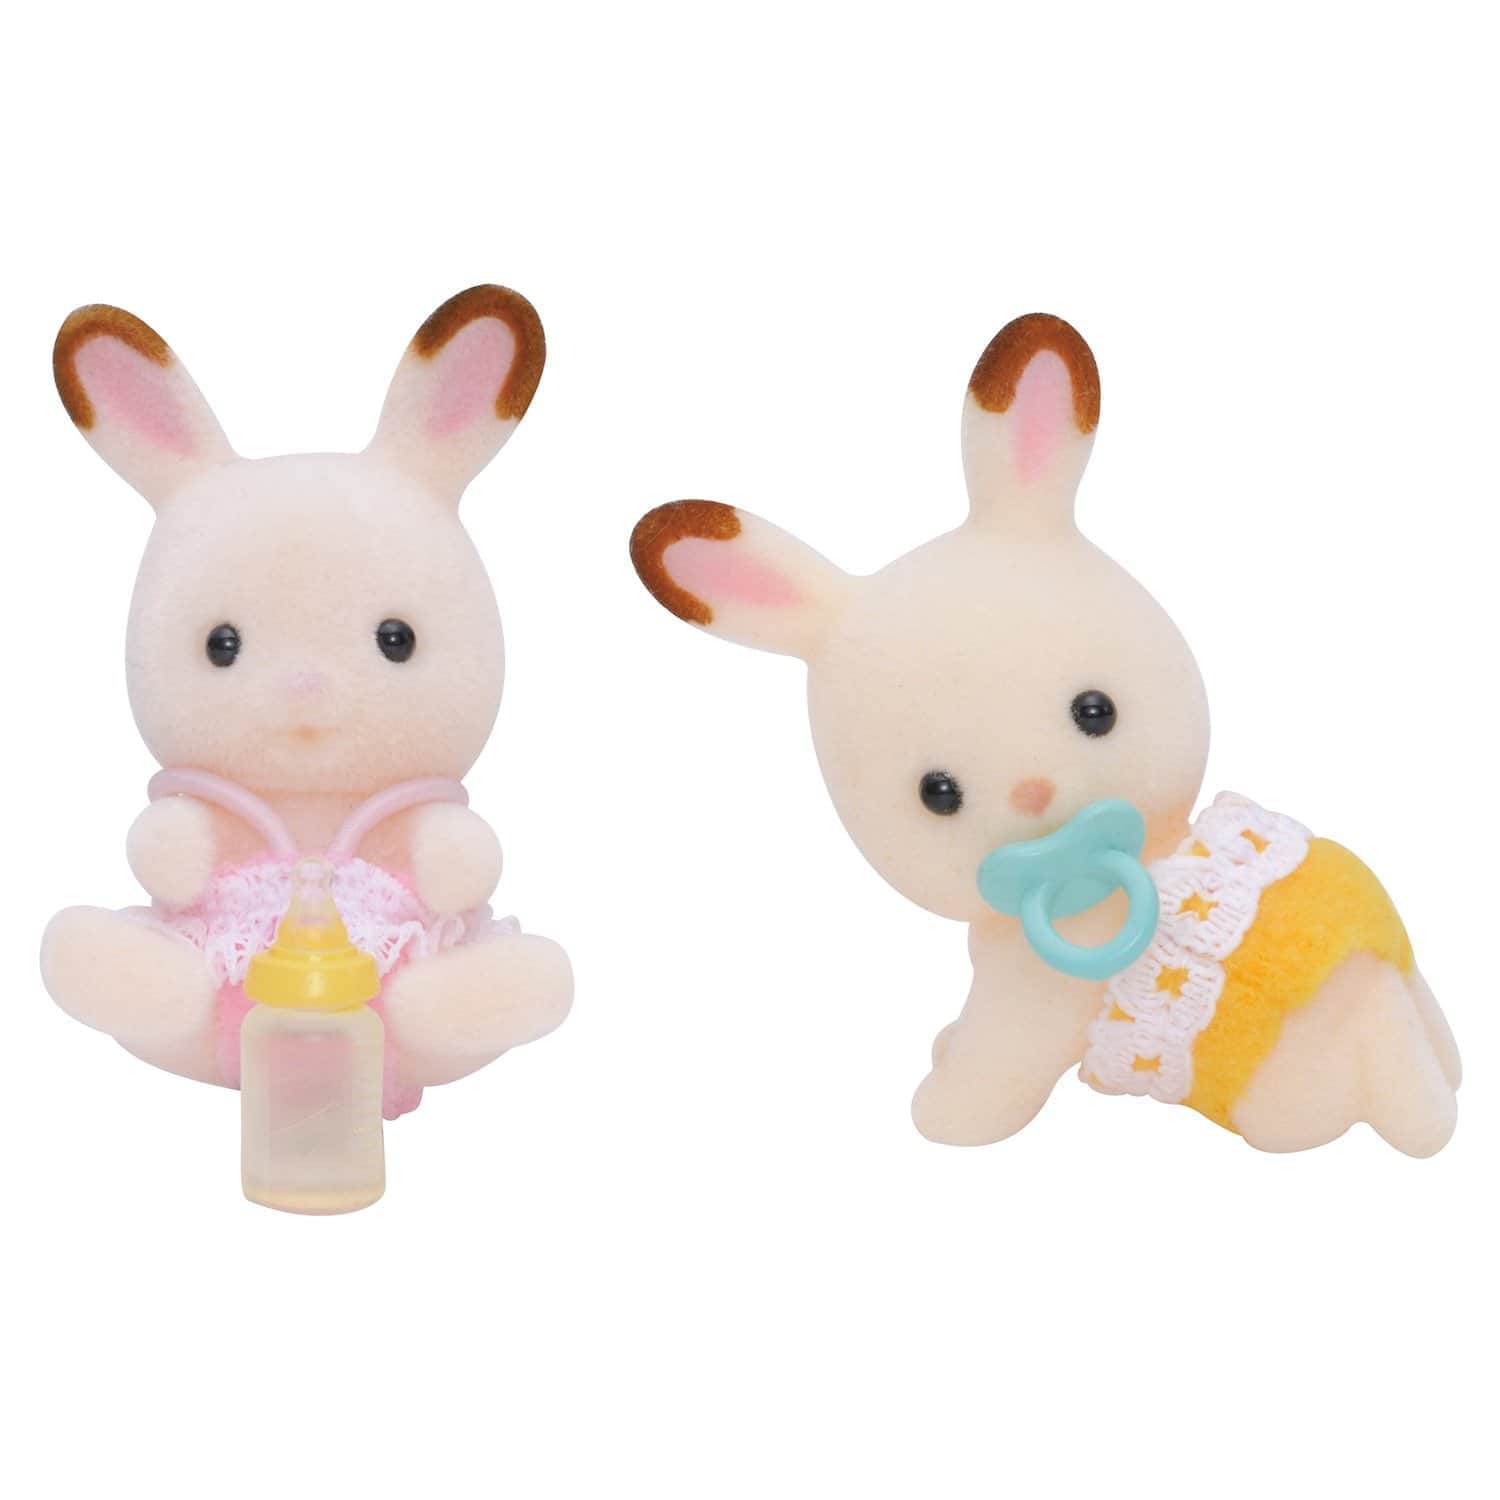 Игровой набор Sylvanian Families Шоколадные кролики-двойняшки 3217/5080